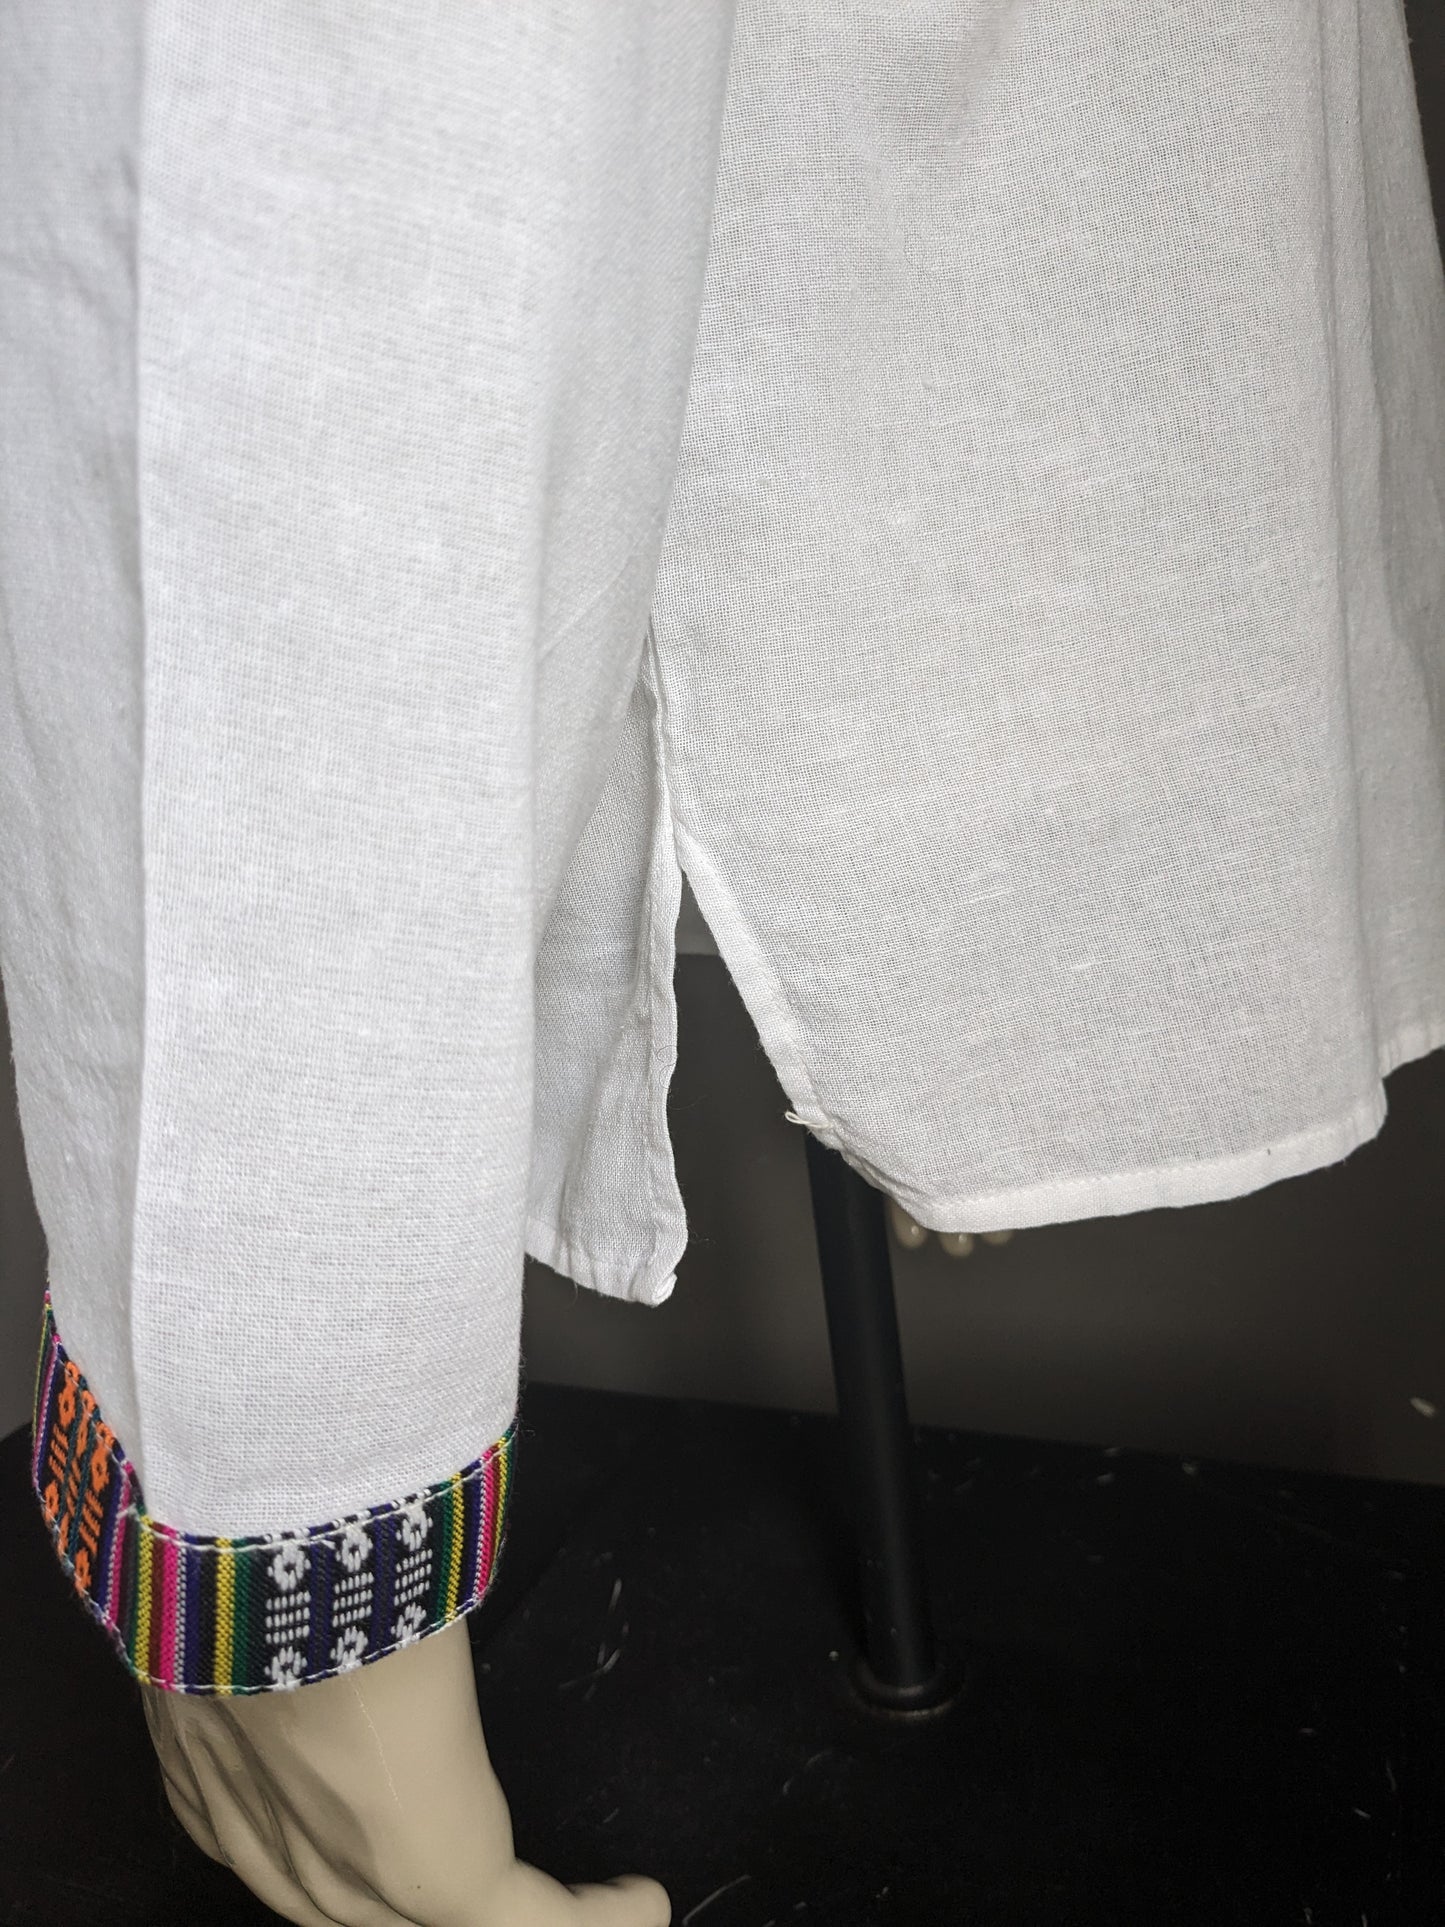 Chemise de chemise vintage avec mao / agriculteur / col debout. Blanc avec des bords colorés. Taille M.